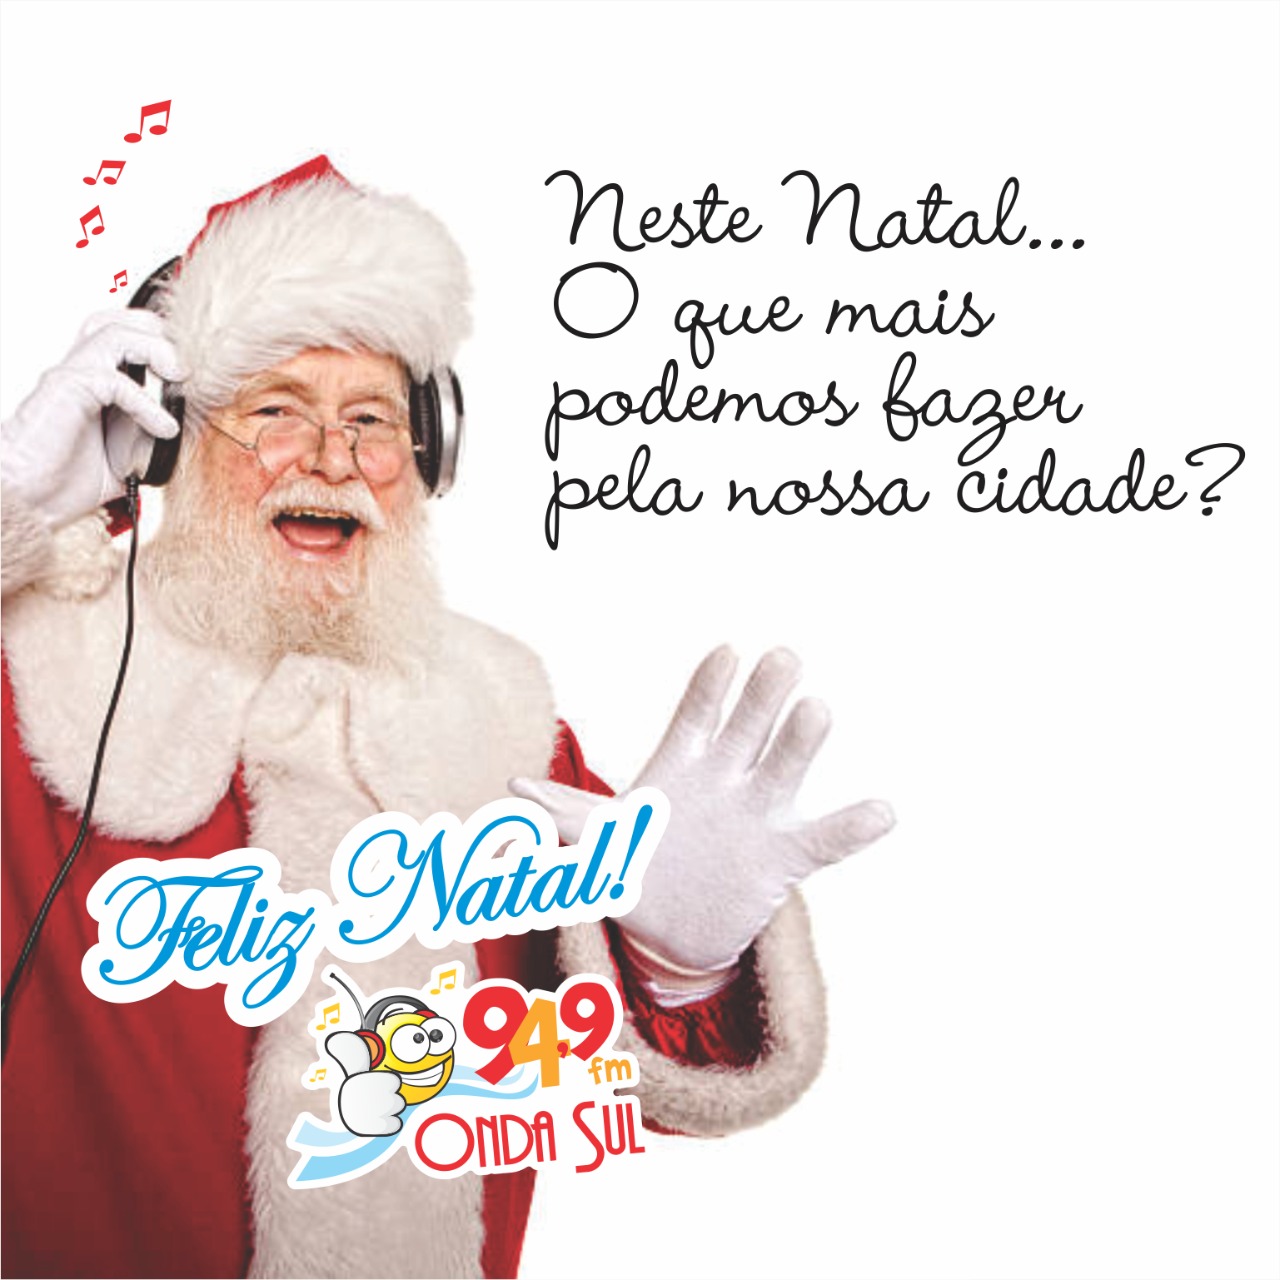 ONDA SUL FM 94,9” deseja um “Feliz Natal” e um “Próspero Ano Novo” a todos  os ouvintes!